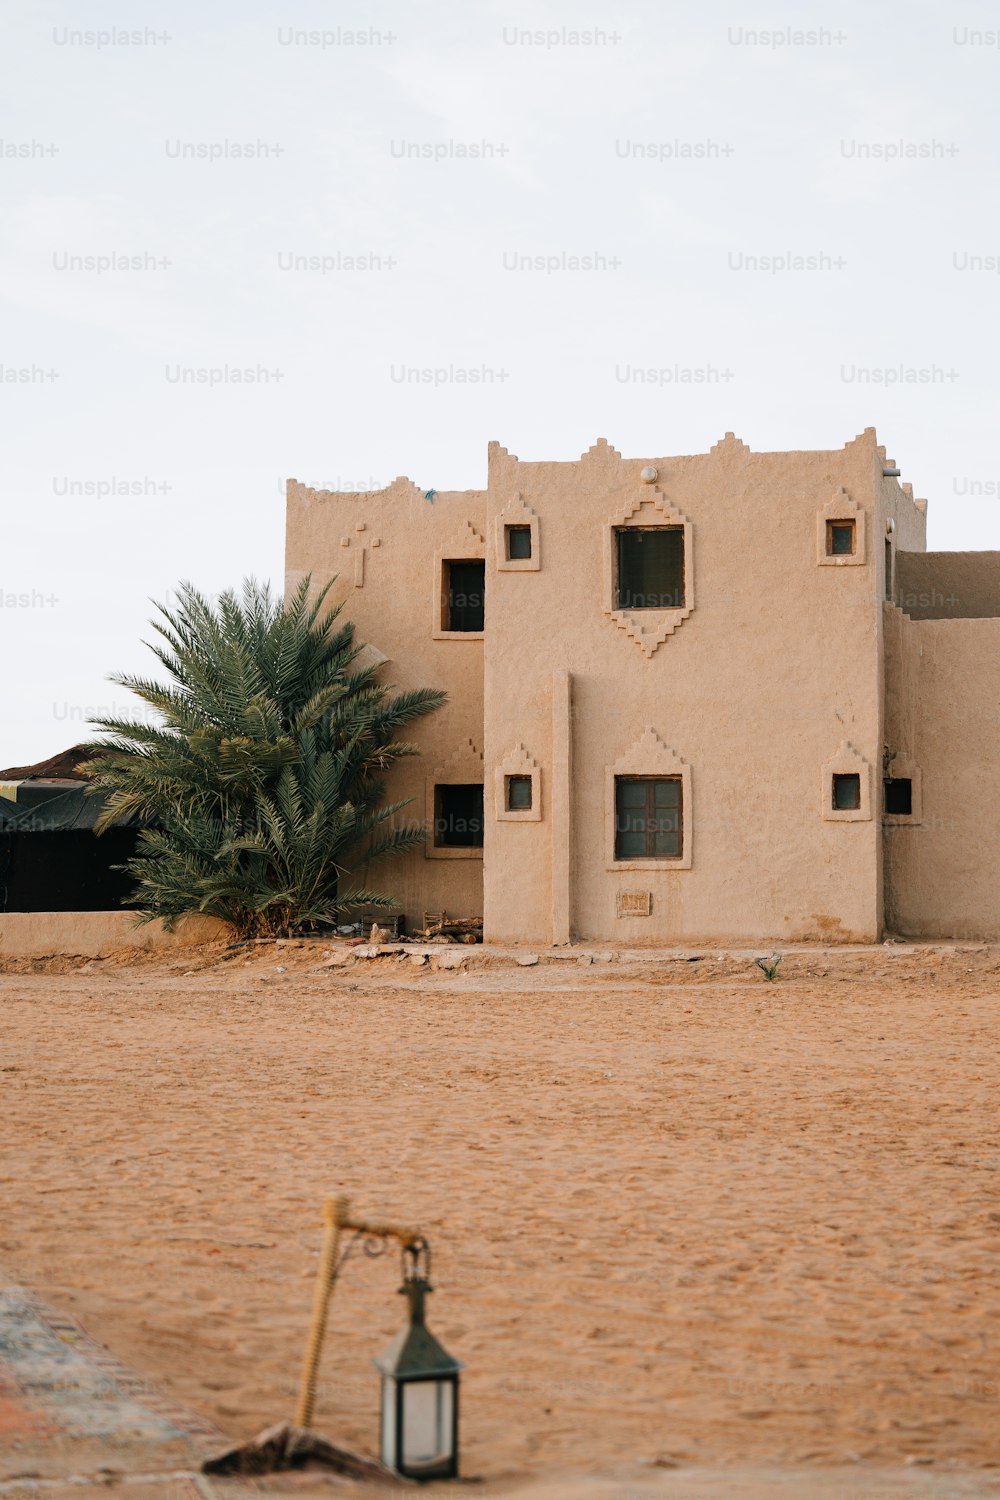 une maison du désert avec une lanterne devant elle